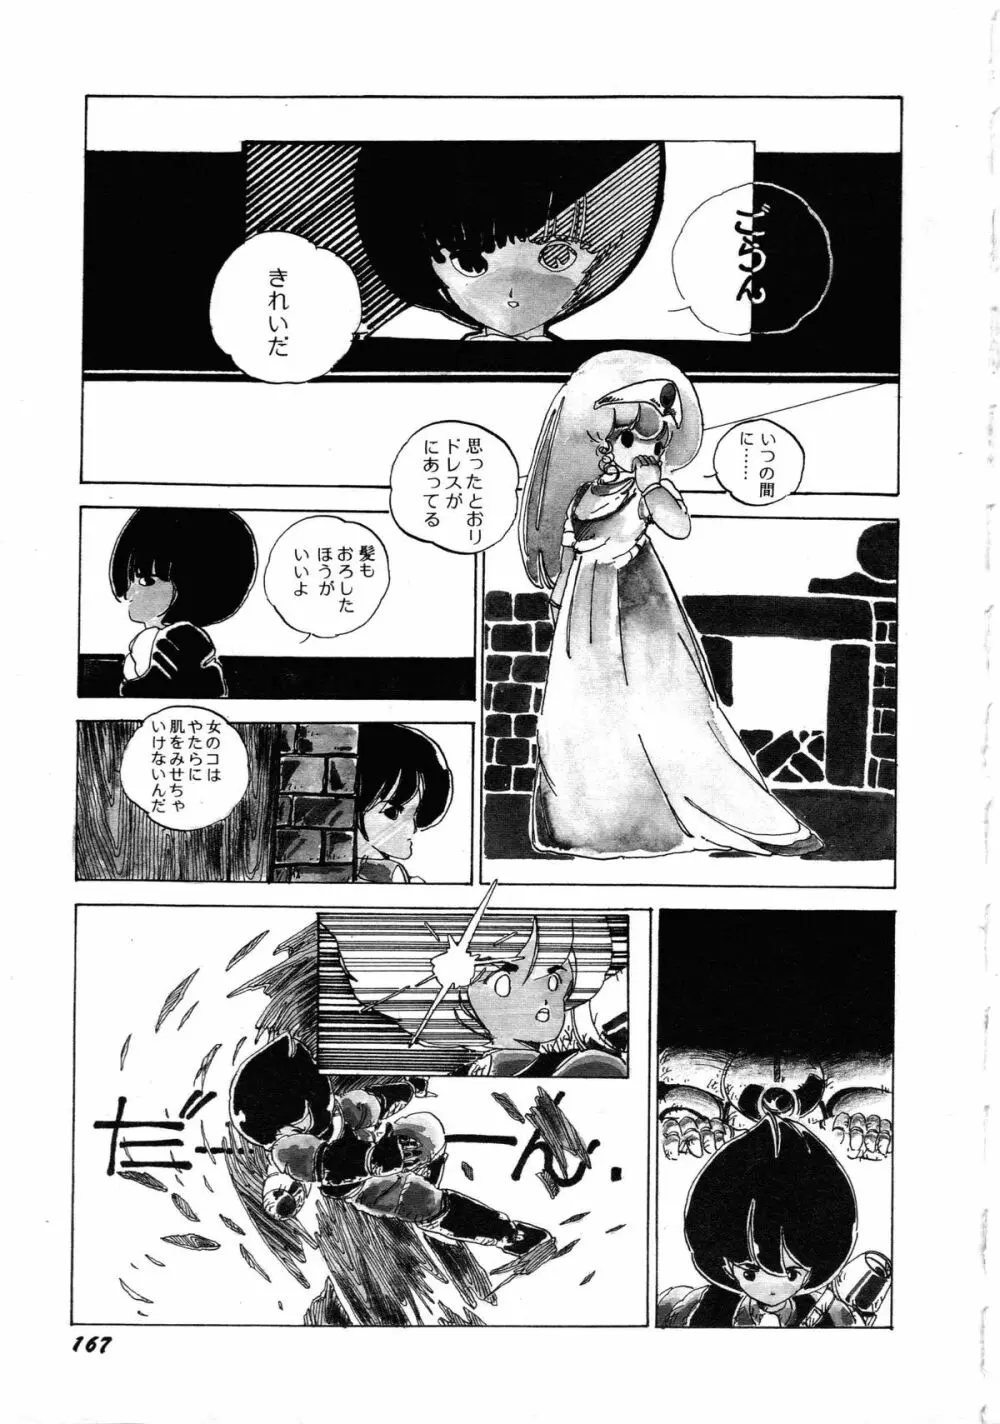 ロボット&美少女傑作選 レモン・ピープル1982-1986 171ページ